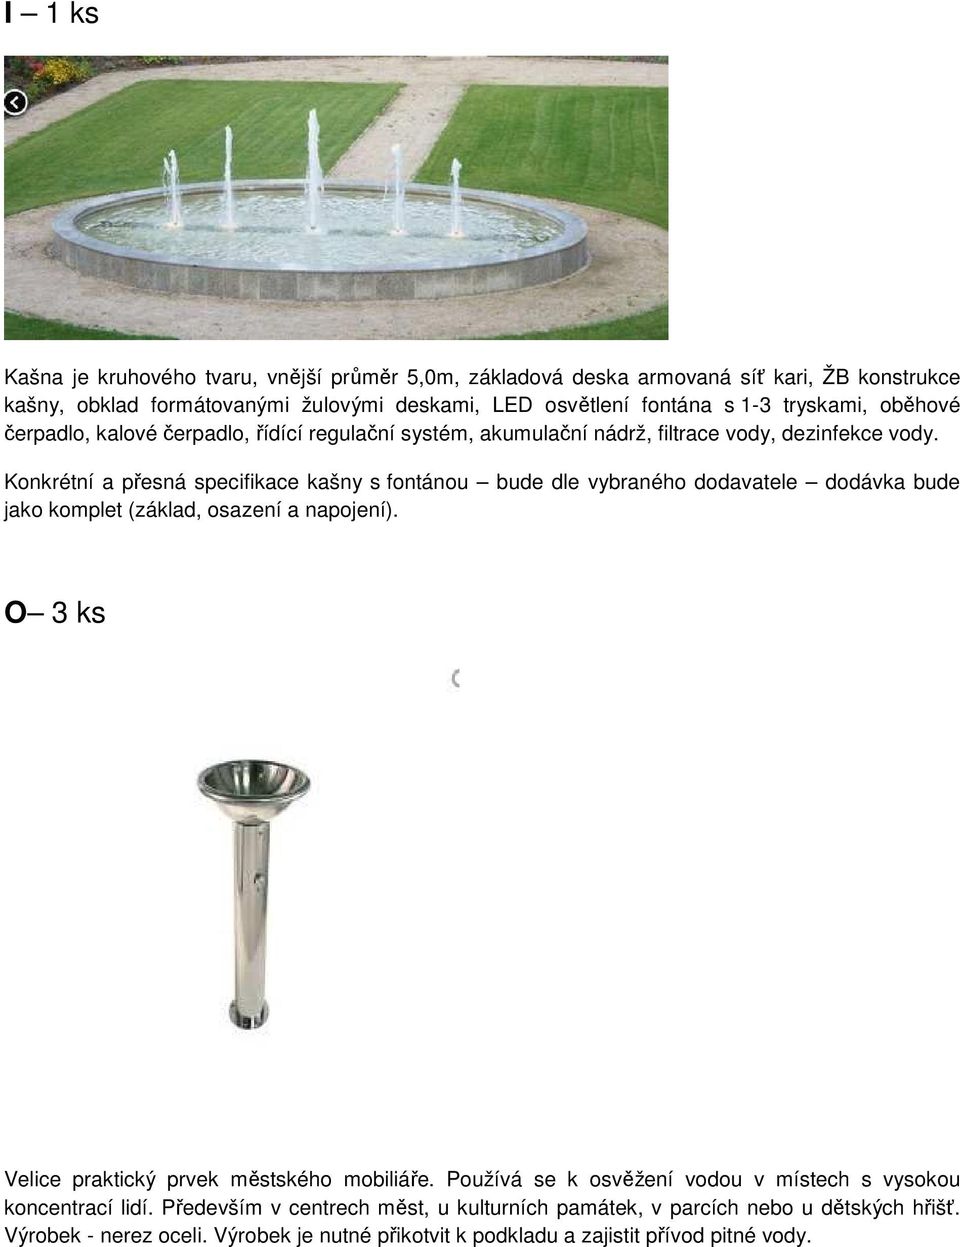 Konkrétní a přesná specifikace kašny s fontánou bude dle vybraného dodavatele dodávka bude jako komplet (základ, osazení a napojení).